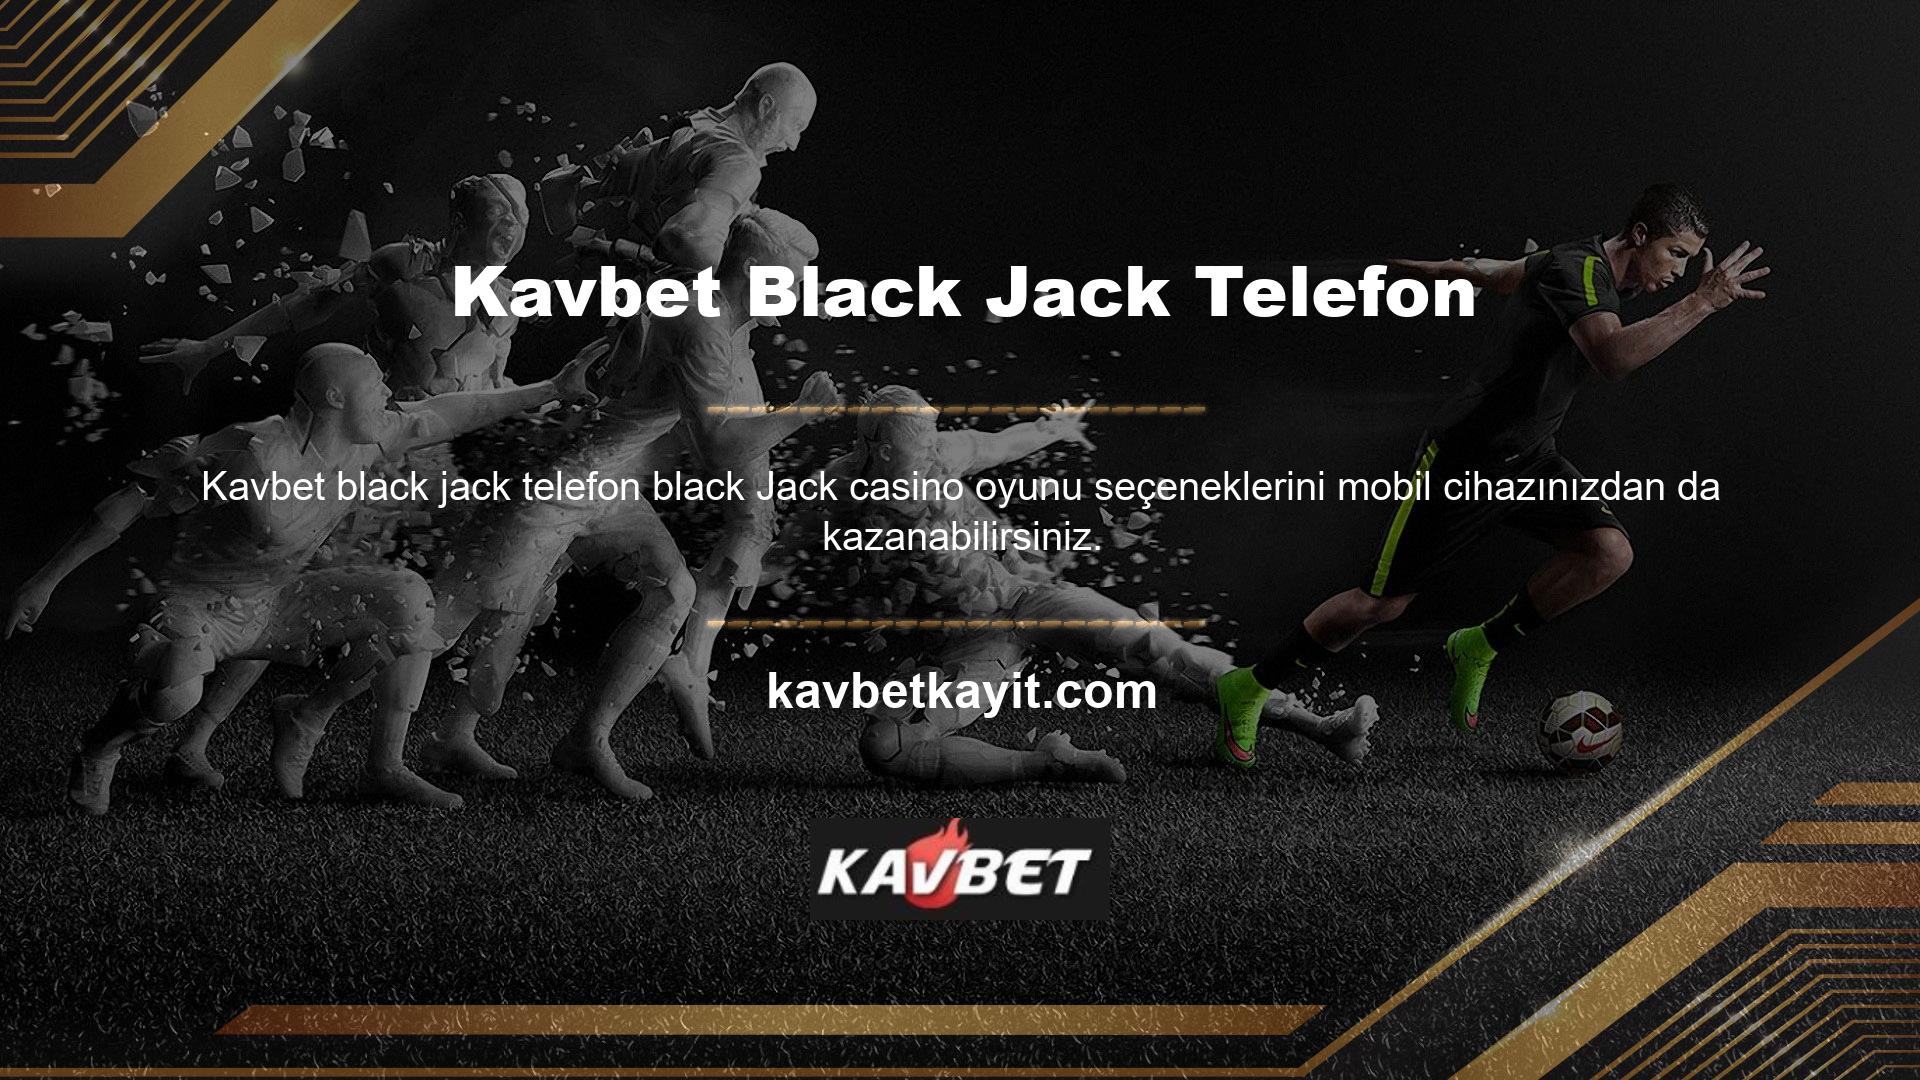 Bu bahis sitesi, Black Jack oyununun farklı versiyonlarına erişmenizi sağlayan bir mobil uygulama geliştirmiştir